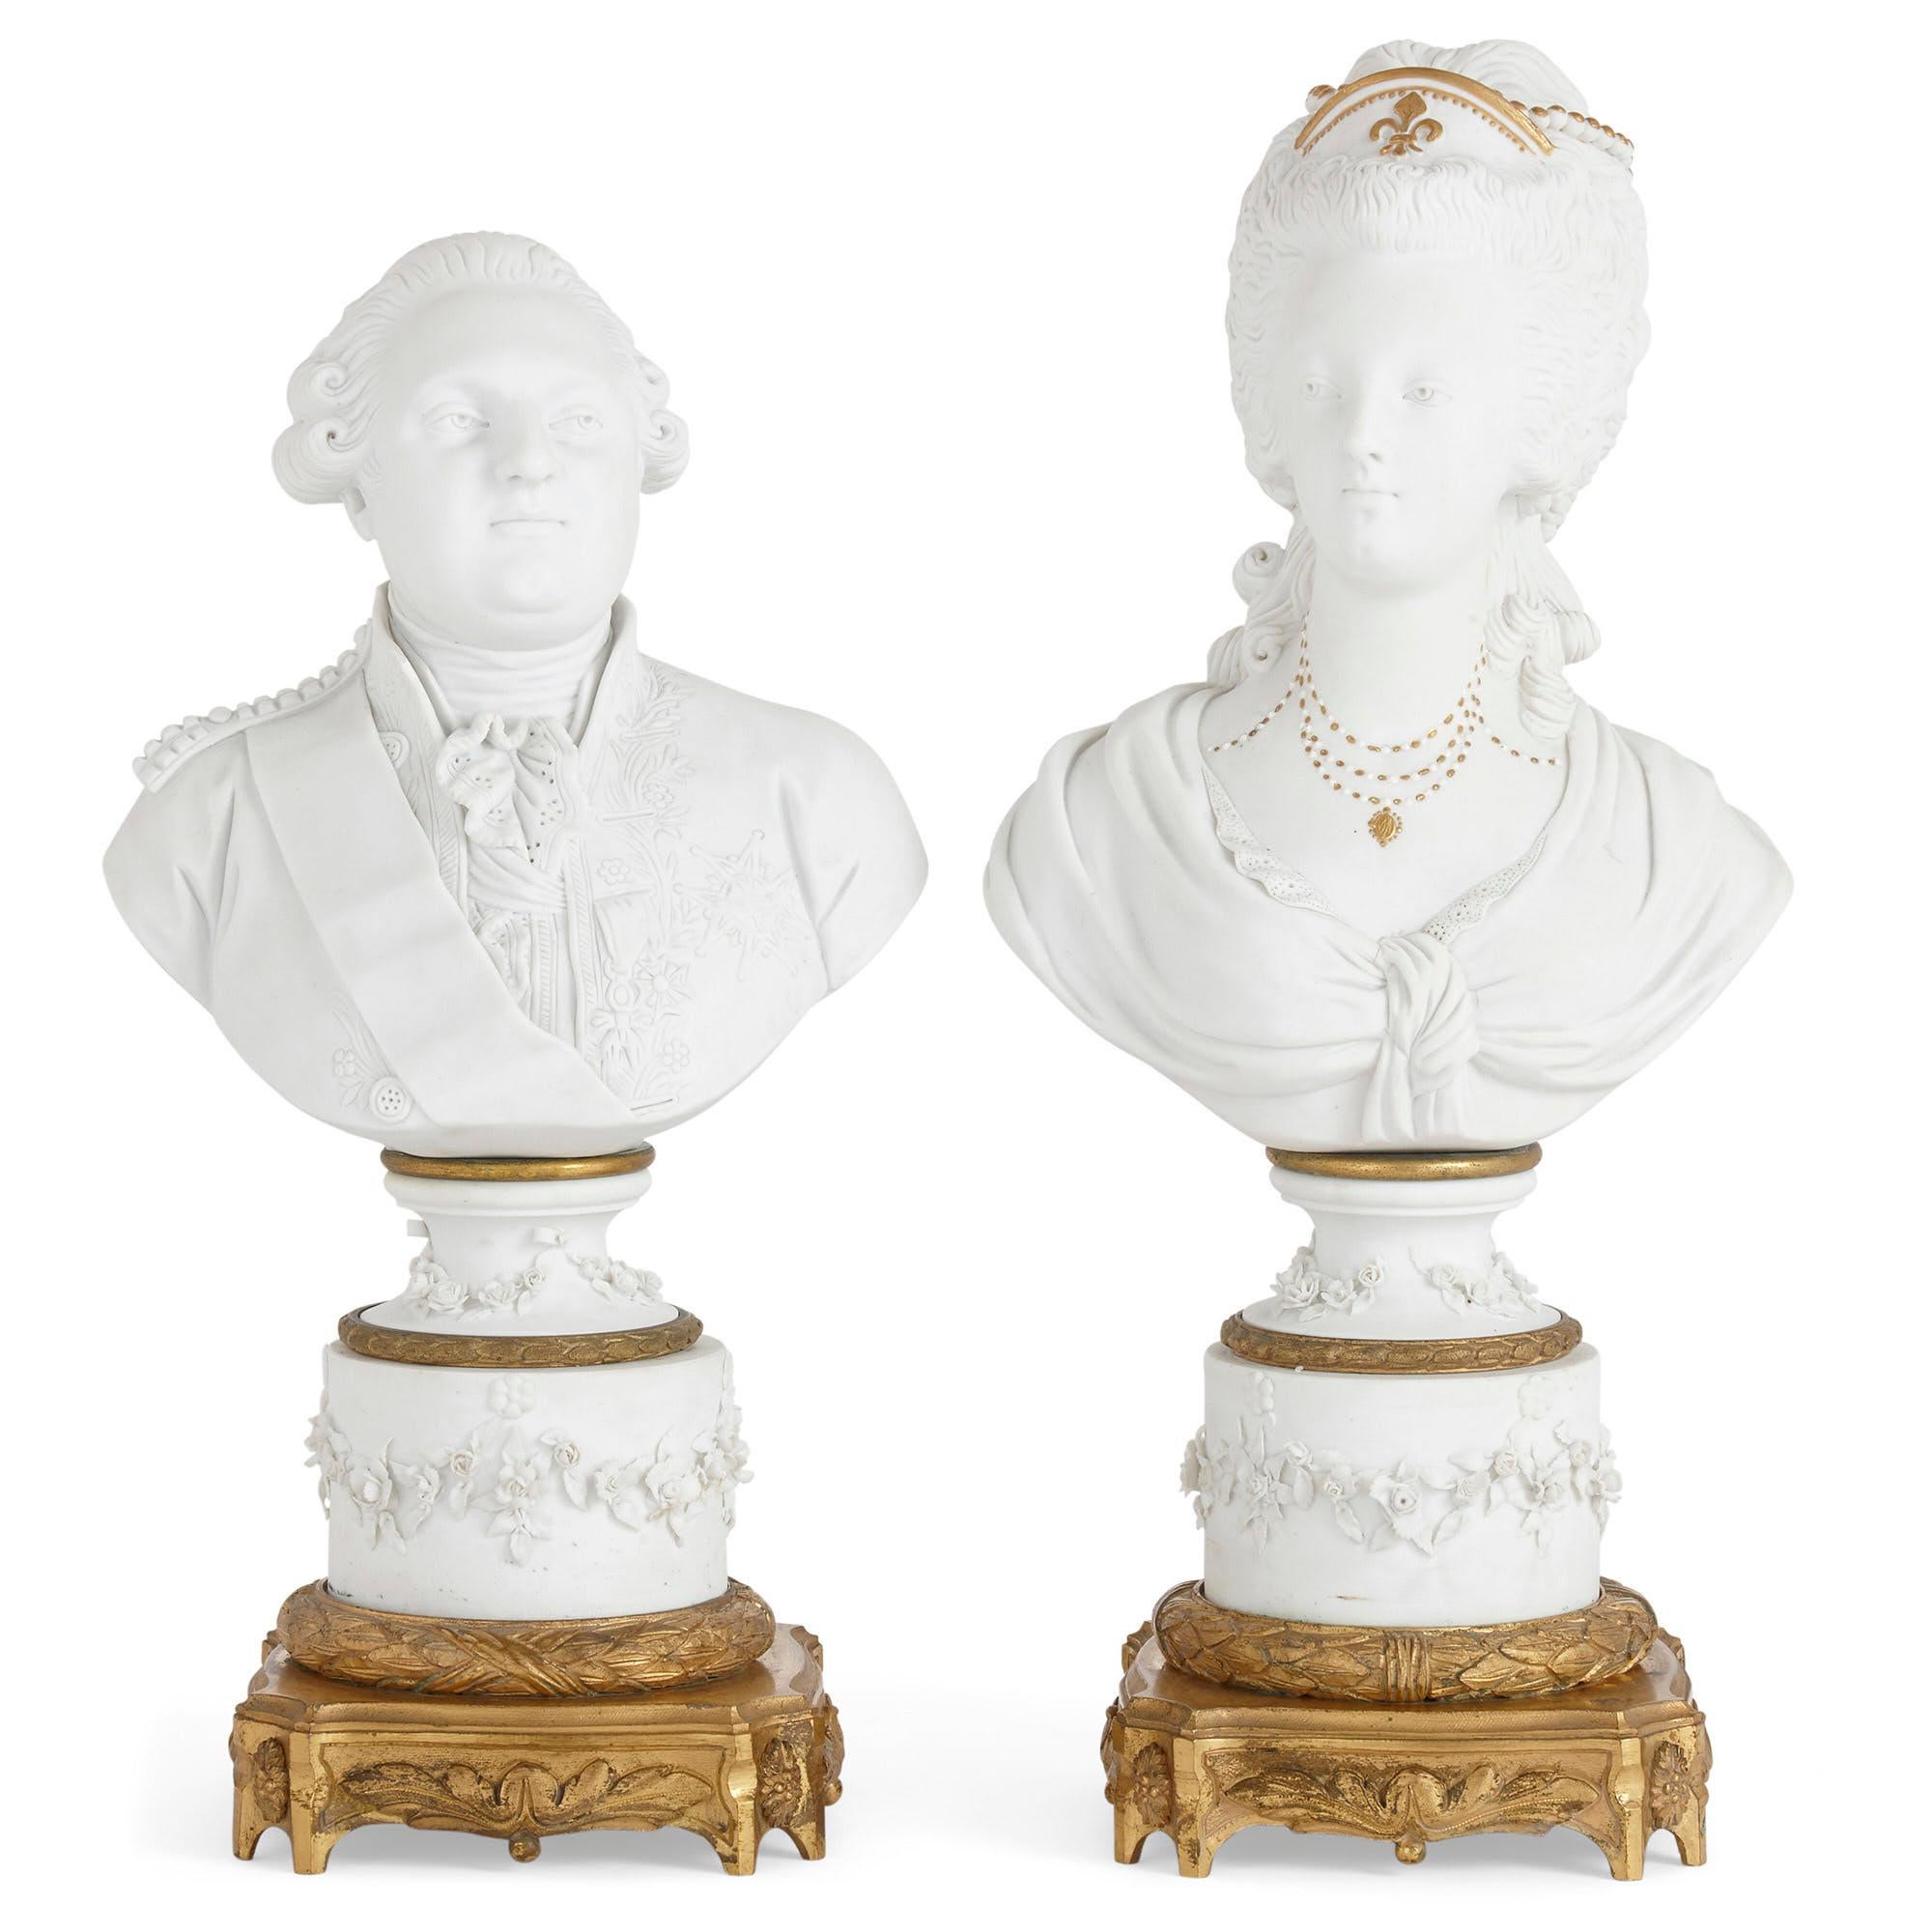 Dieses Büstenpaar stellt den ehemaligen König und die Königin von Frankreich, Ludwig XVI. und Marie Antoinette, dar. Die Büsten sind aus unglasiertem weißem Porzellan, dem so genannten Biskuit, gefertigt. Jede Porzellanbüste steht auf einem